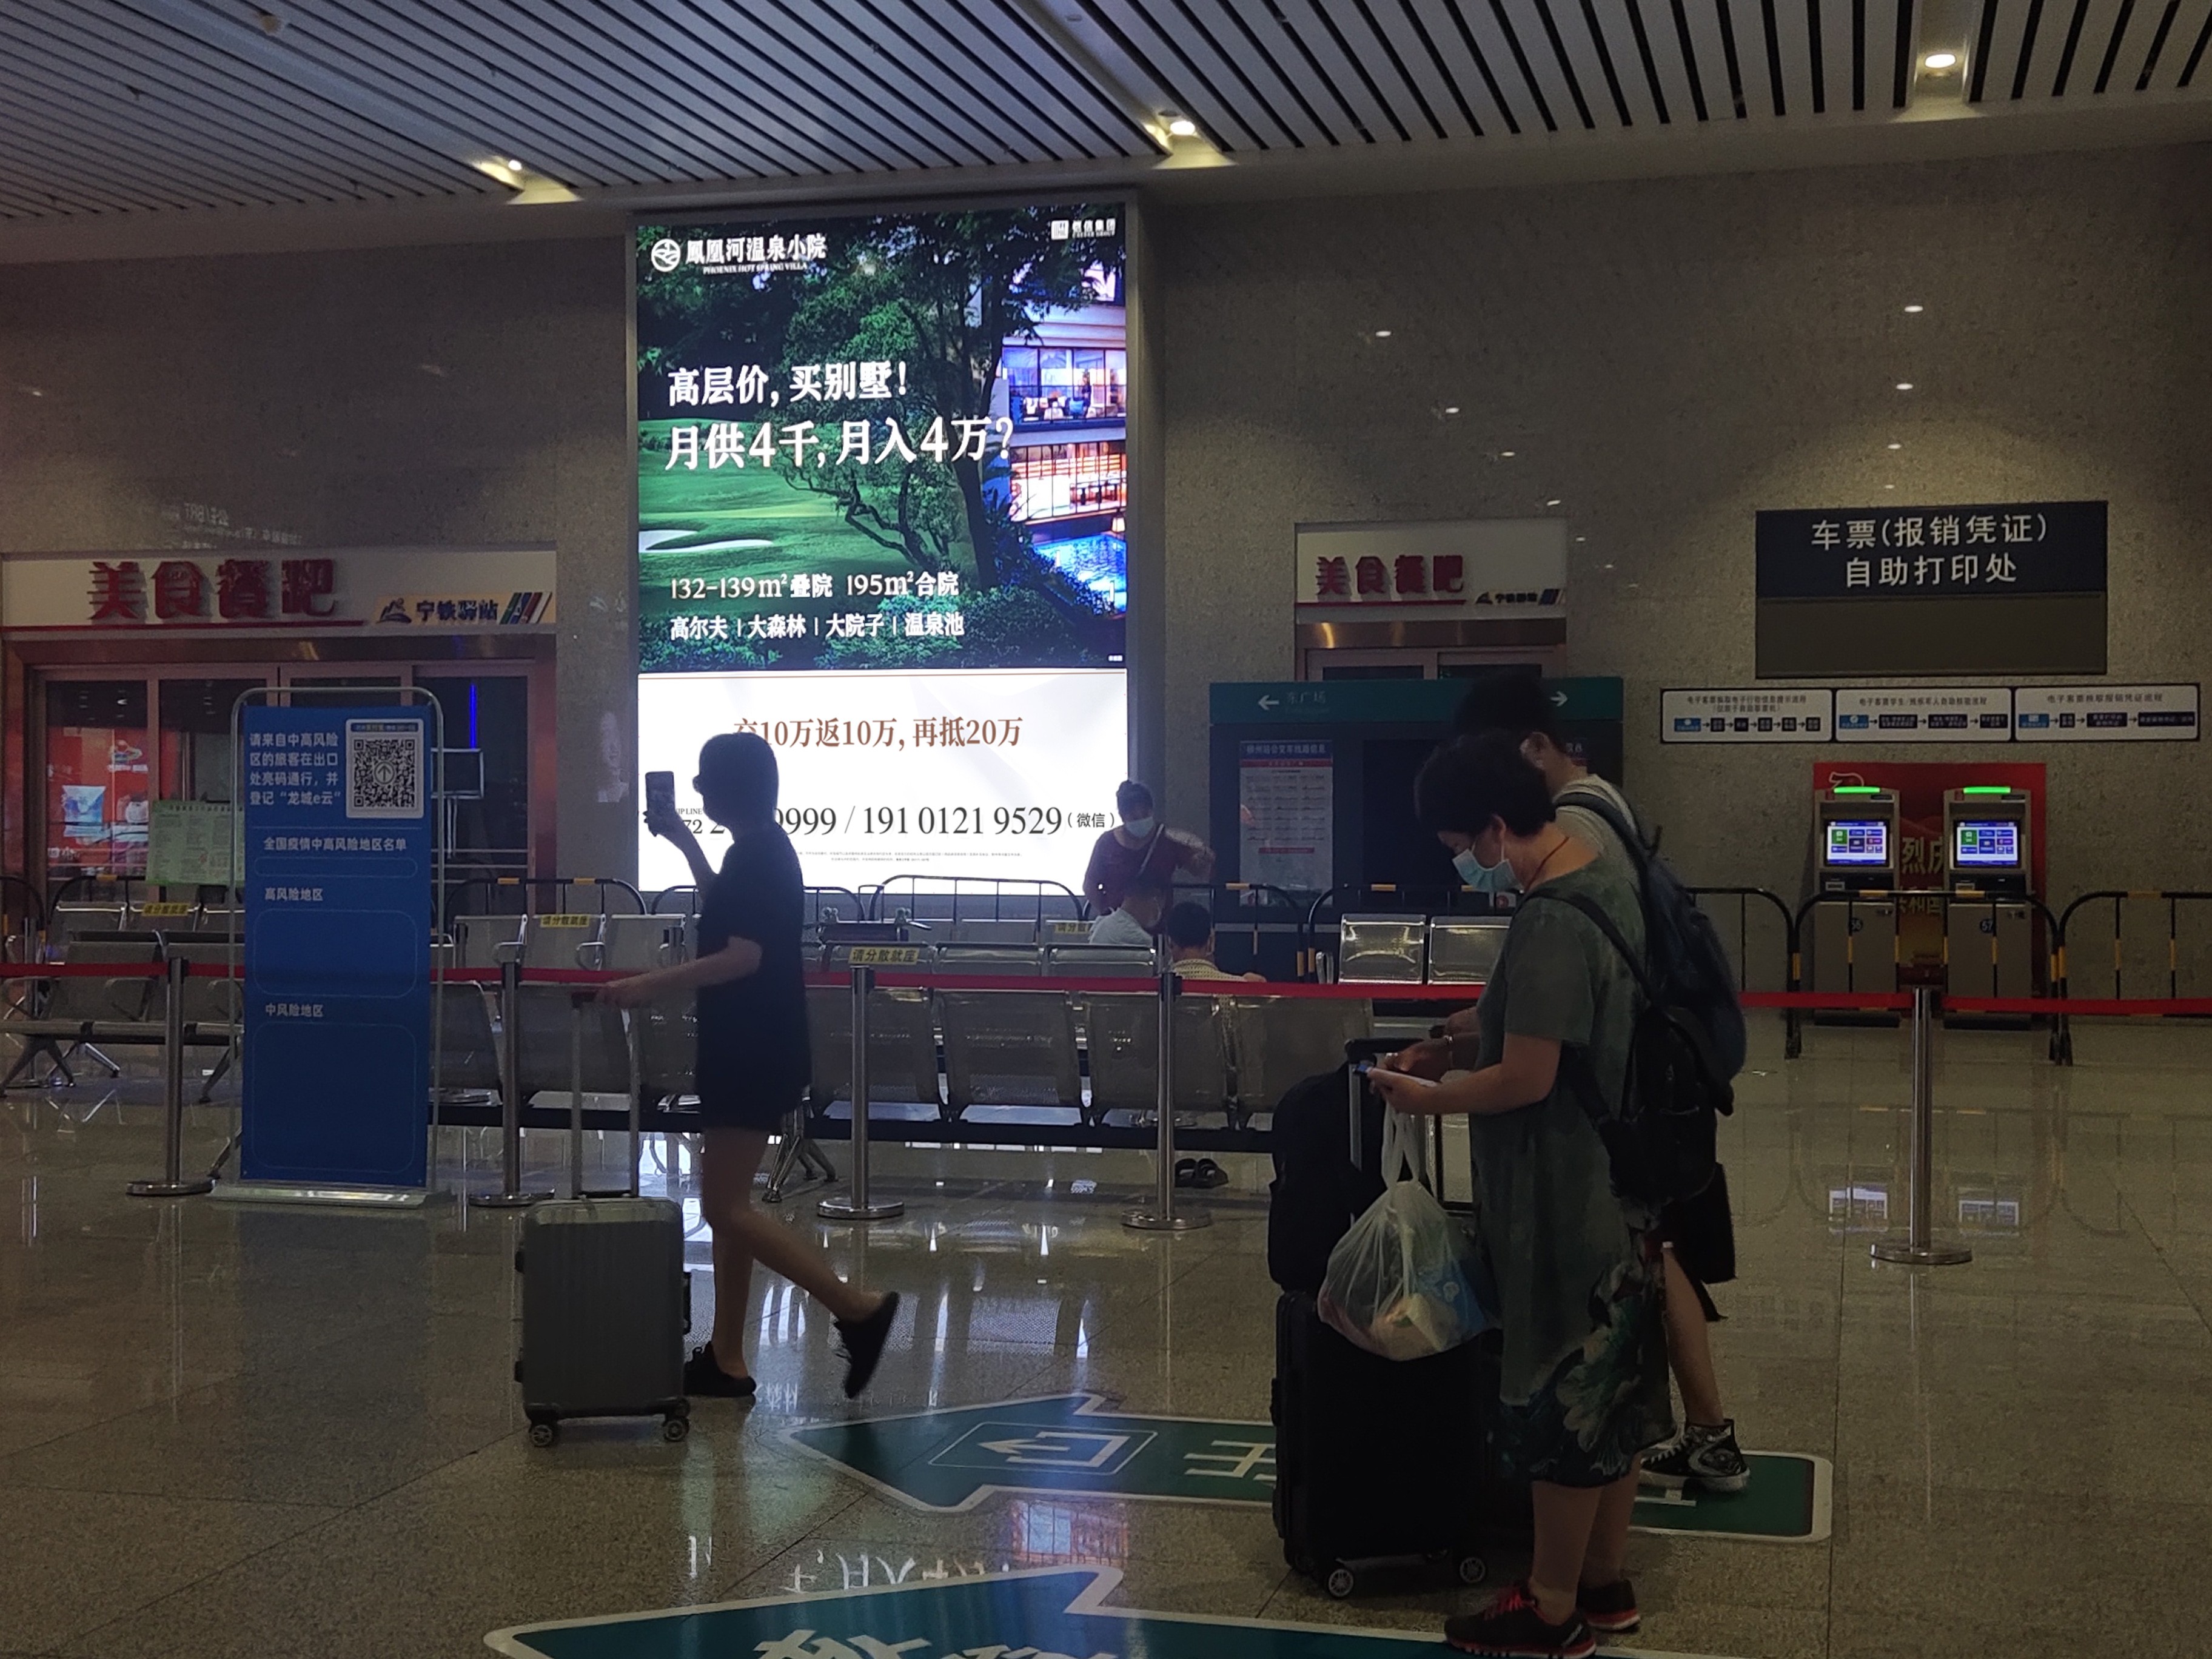 广西柳州地区柳州站出站大厅8火车高铁媒体灯箱